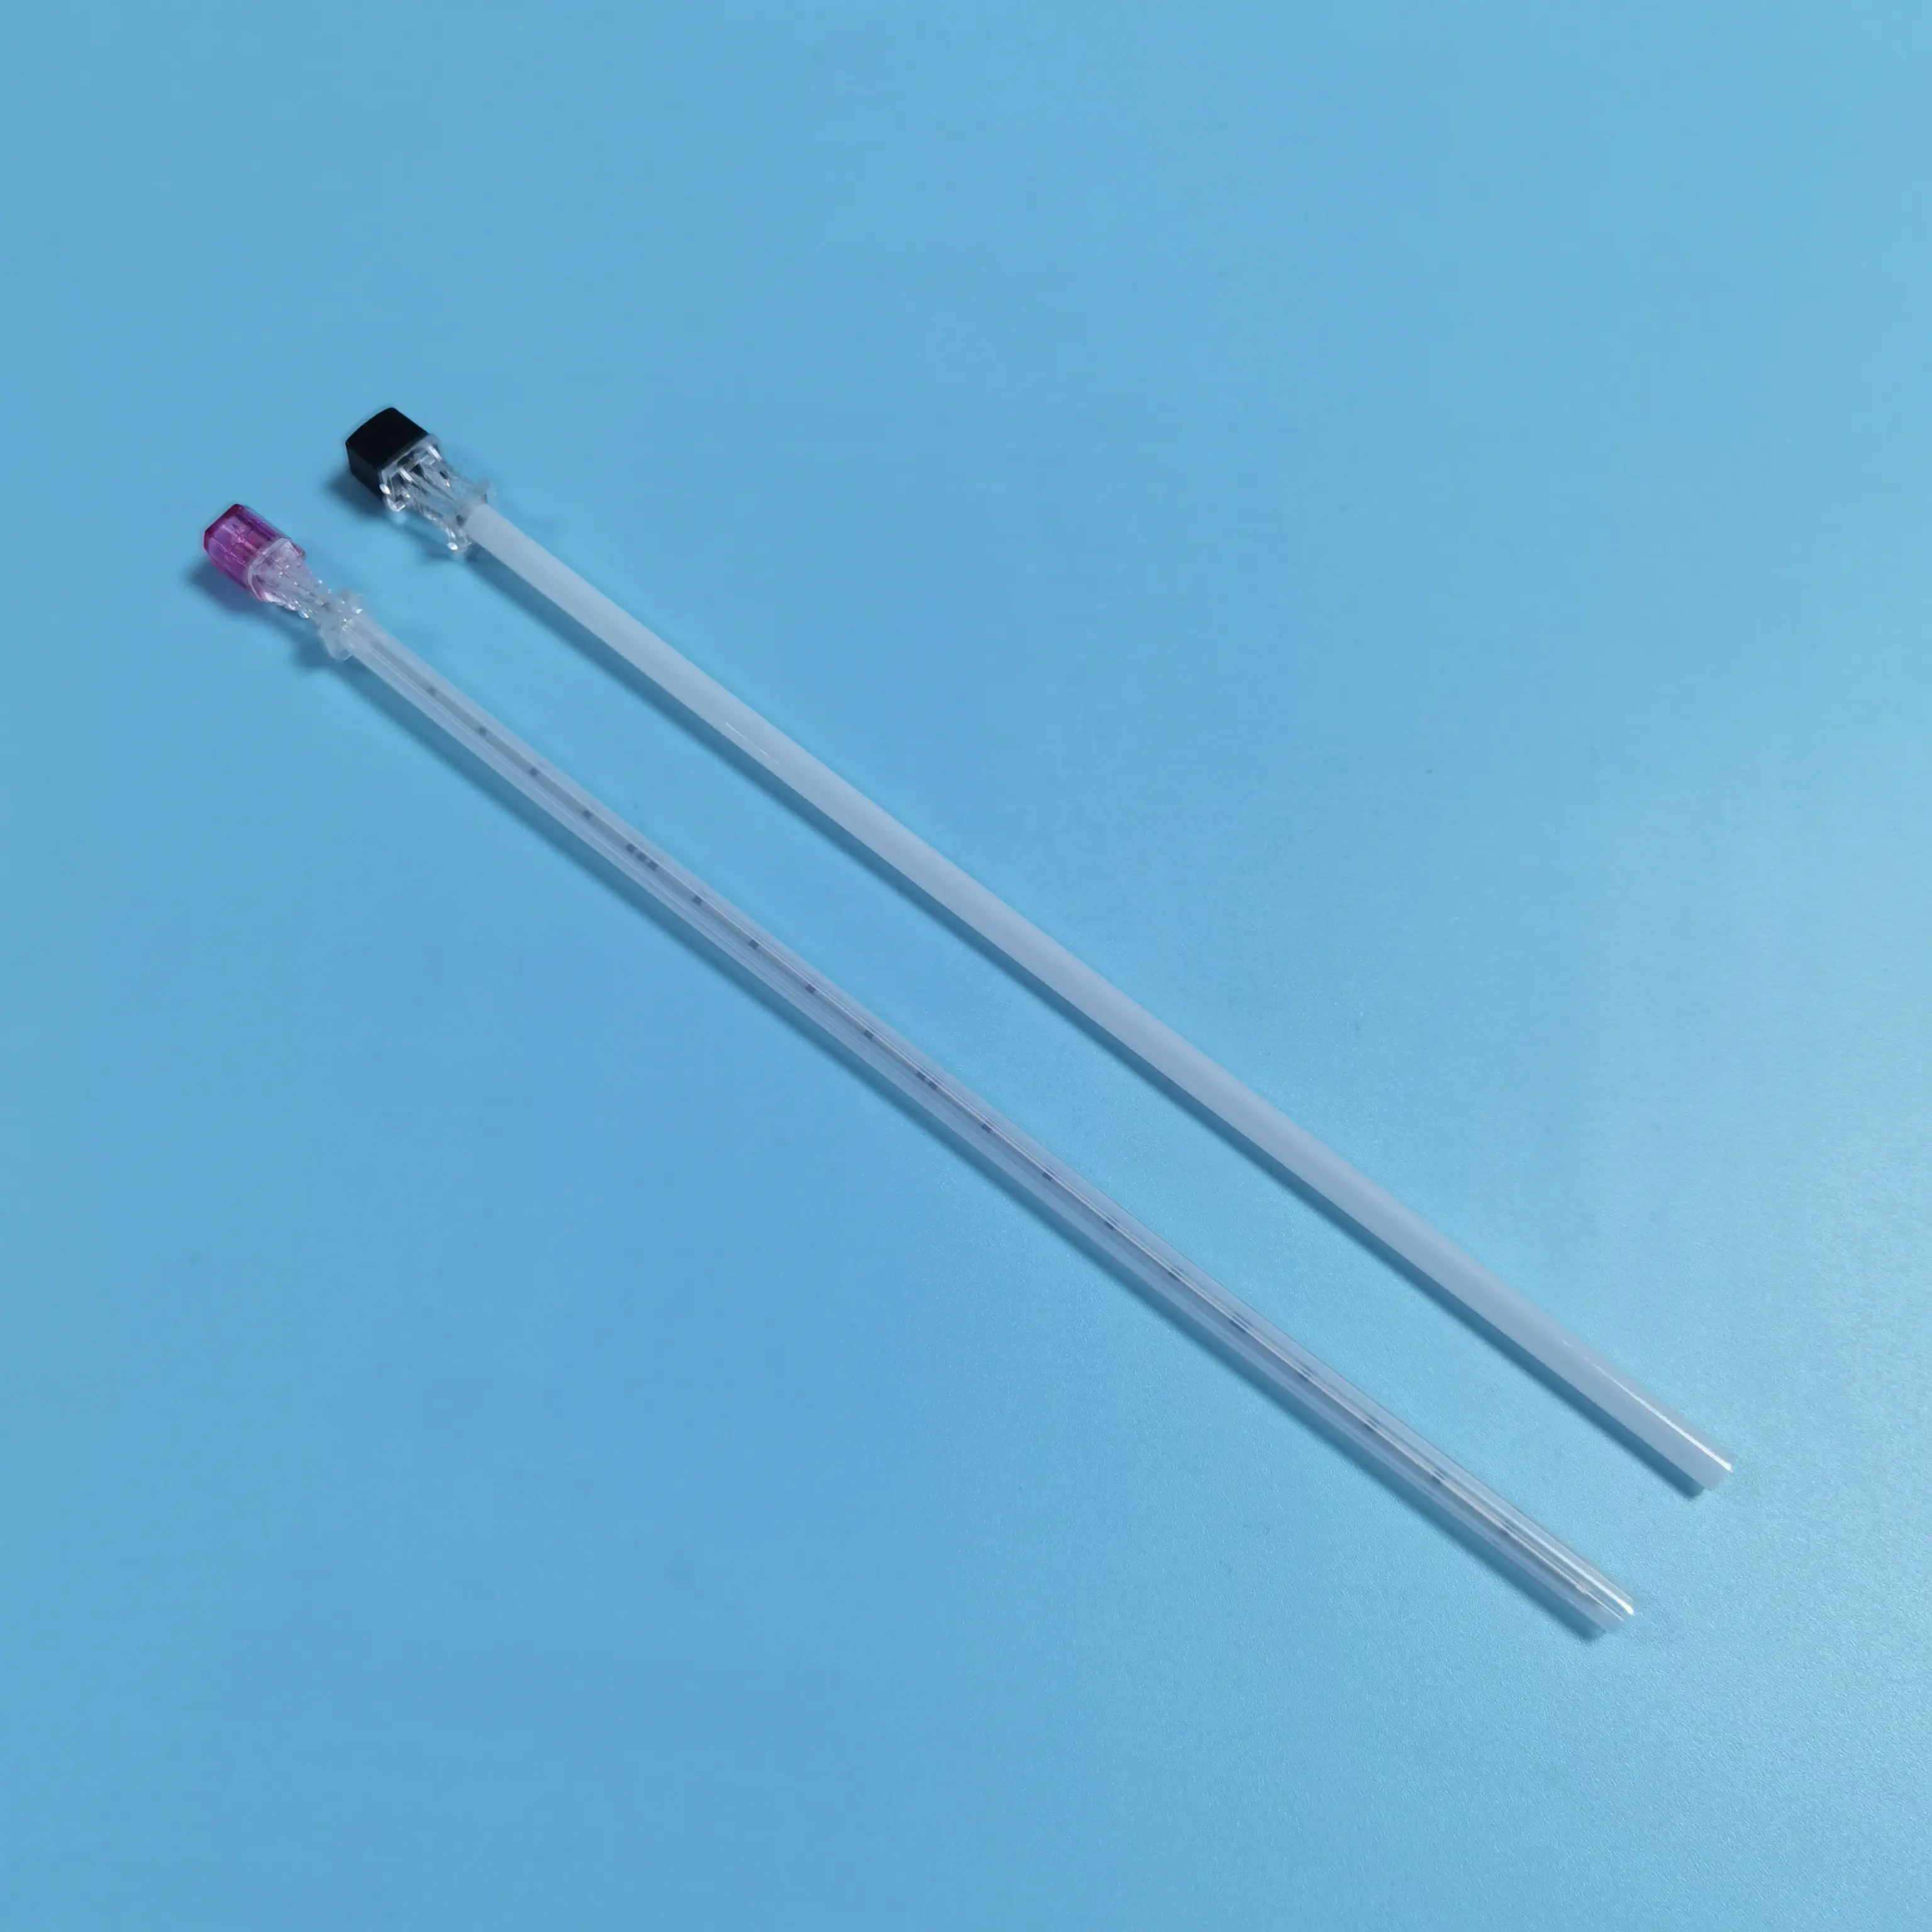 Tianck-suministro médico desechable ce mark, aguja de chiba de 18g 20g 22g